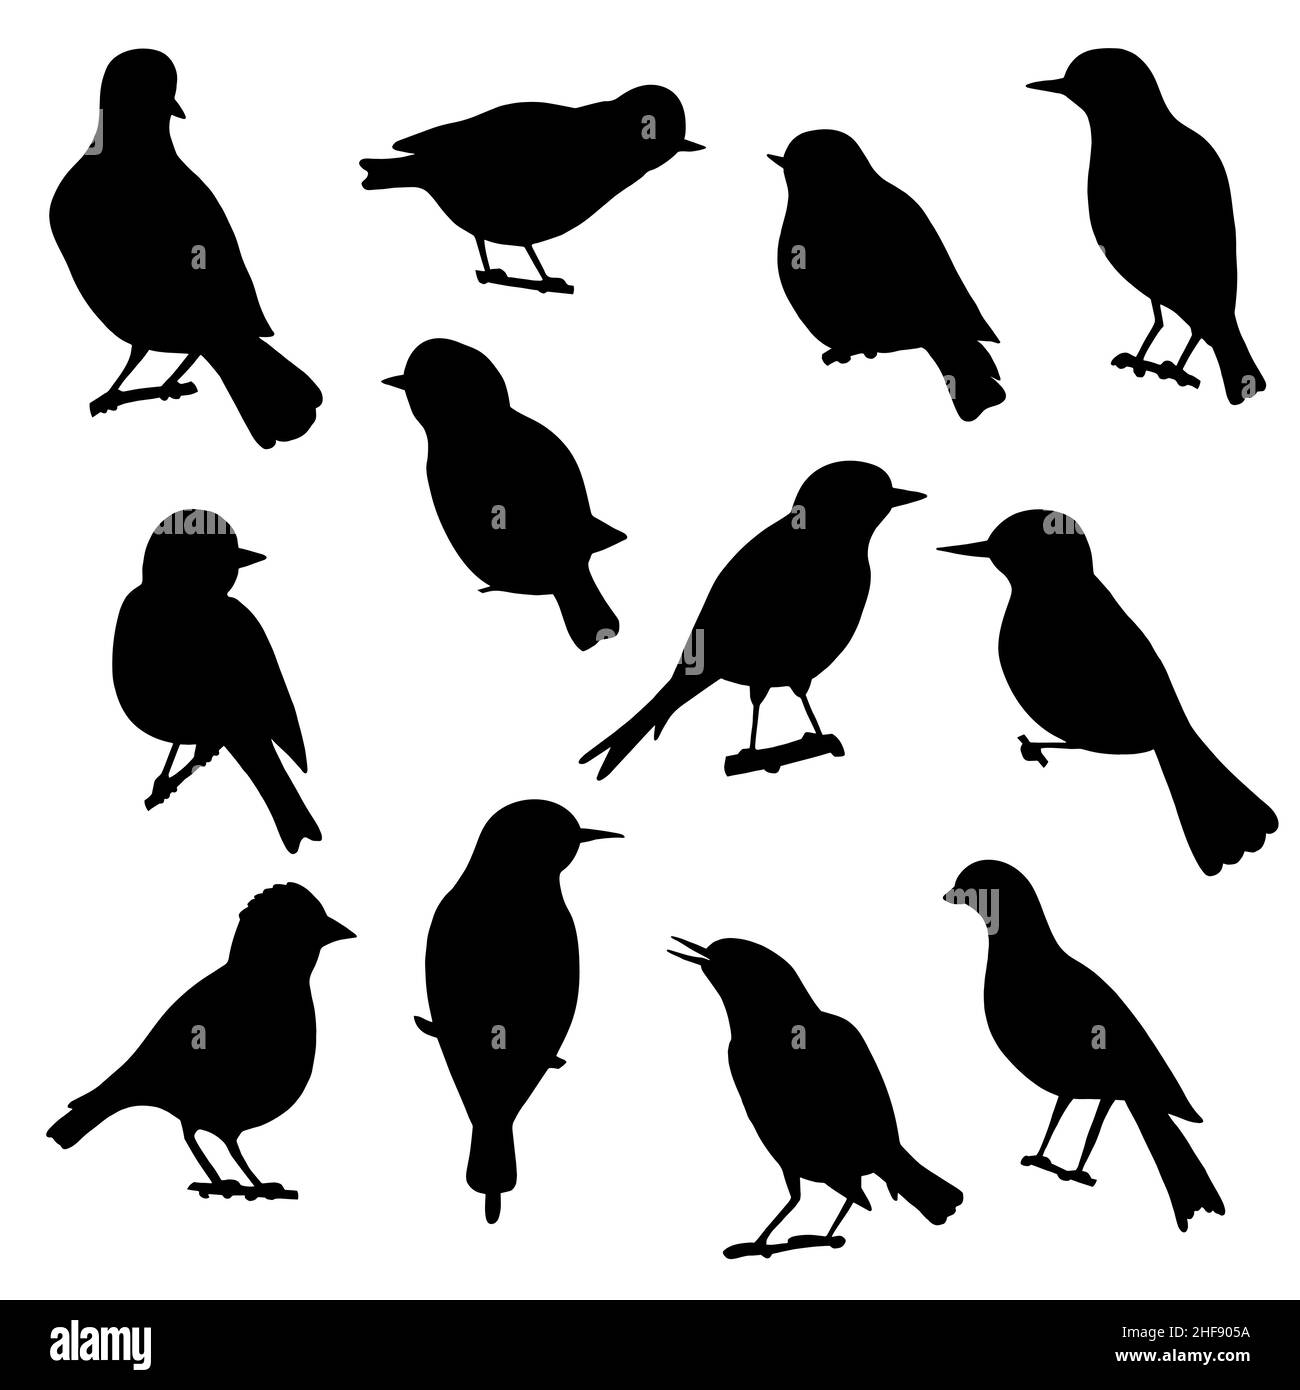 Ensemble de silhouettes noires d'oiseaux chanteurs sur fond blanc Illustration de Vecteur